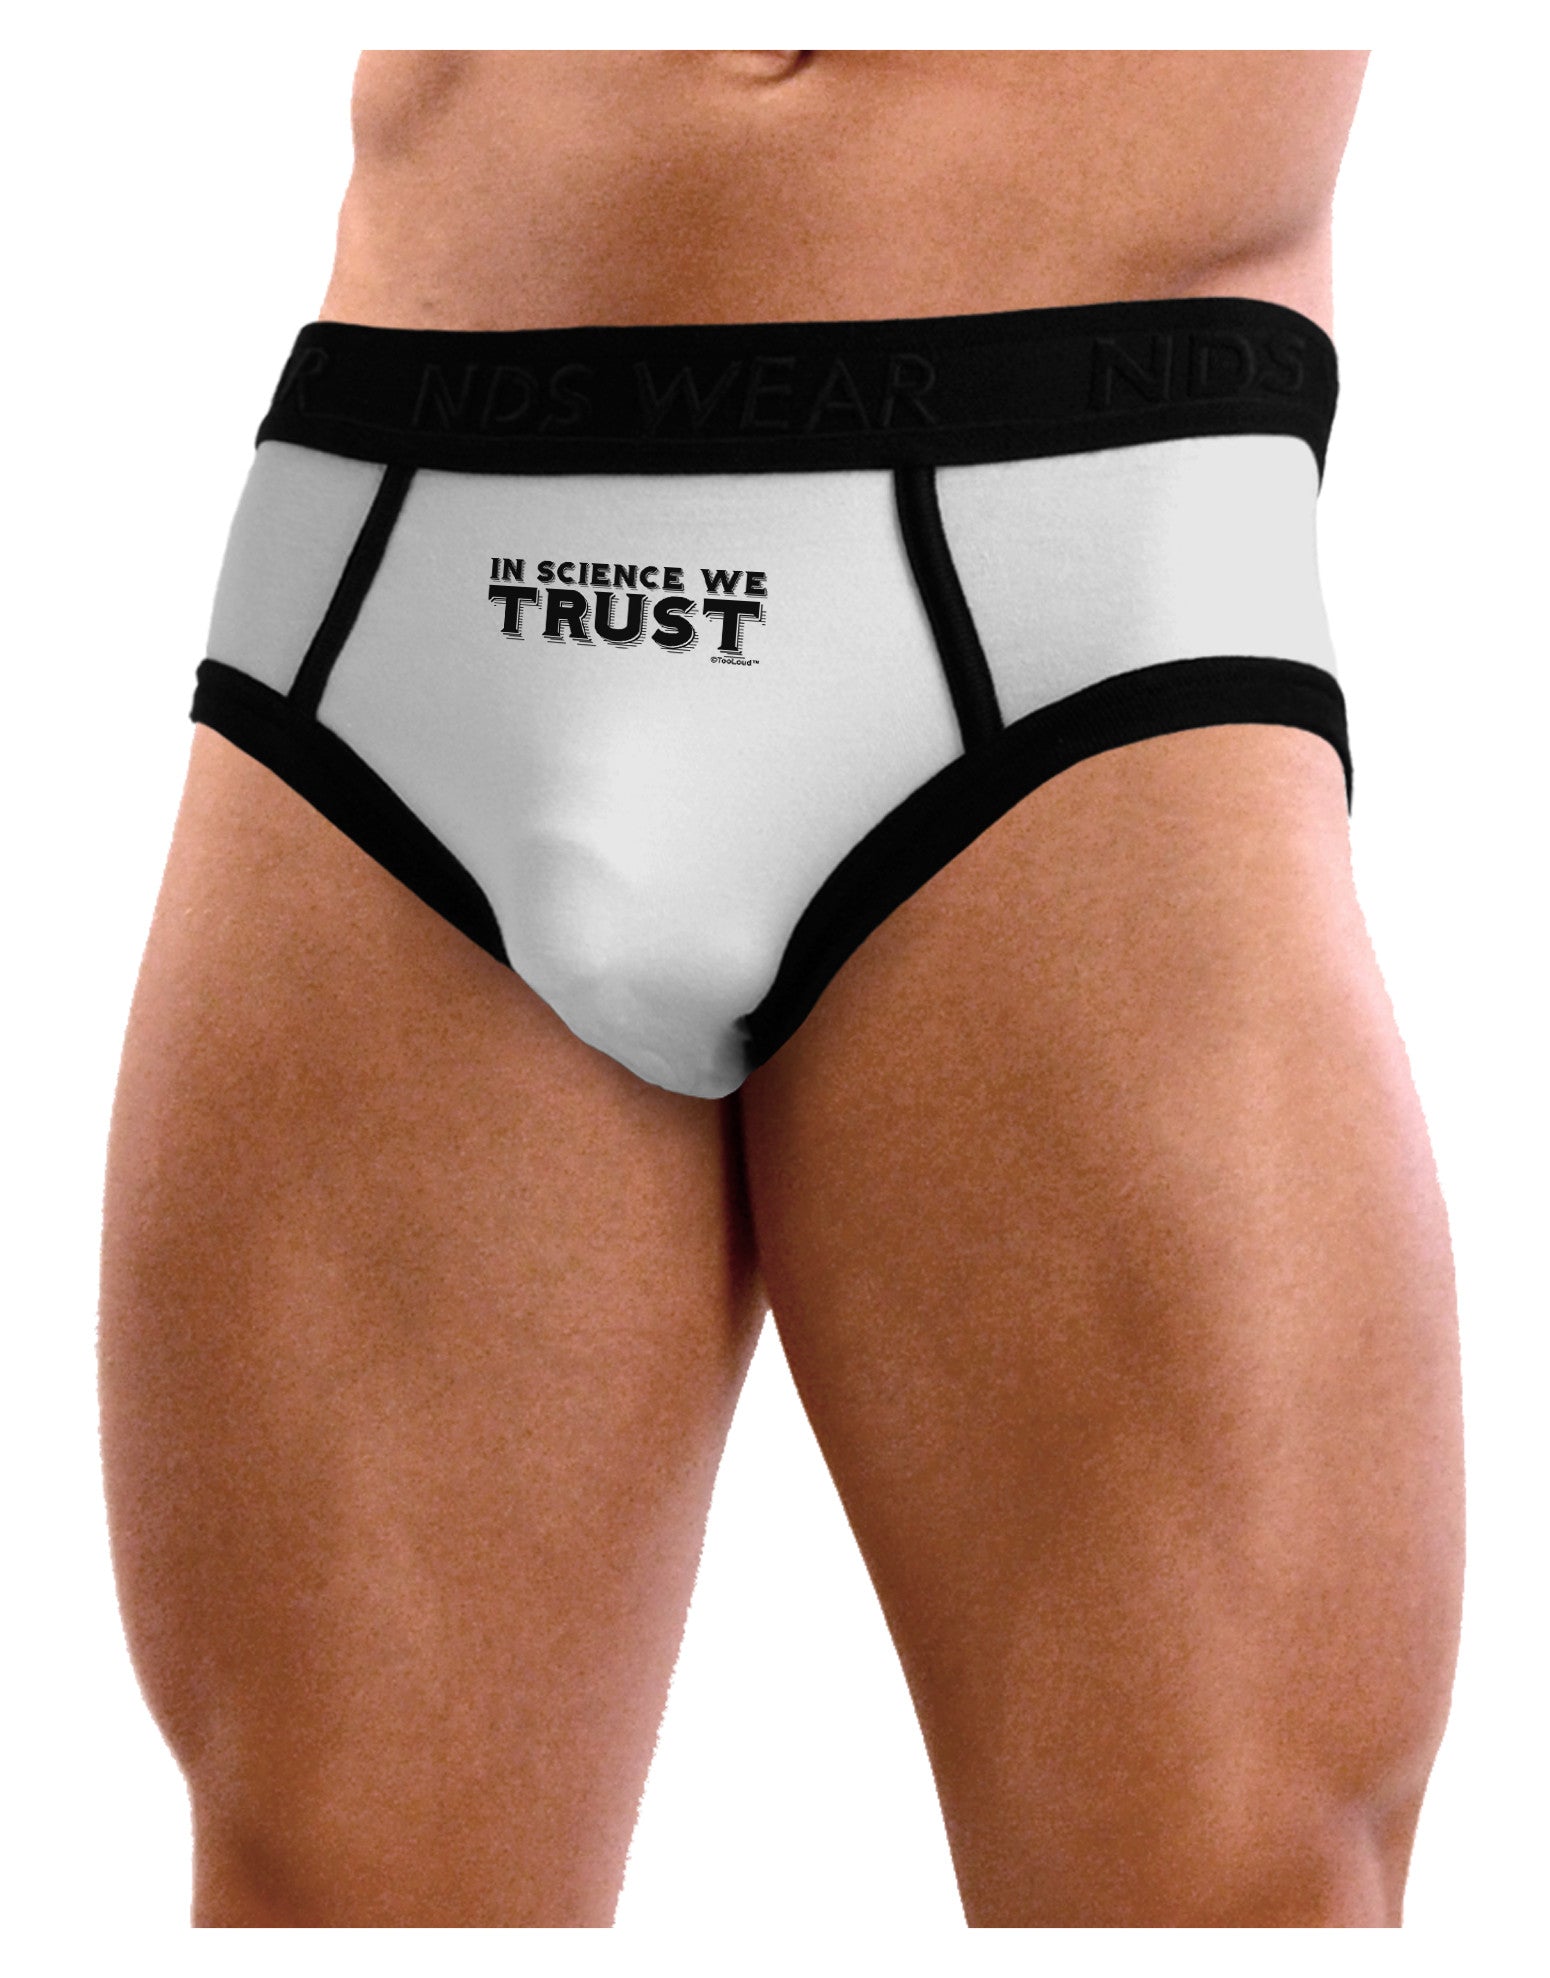 In Science We Trust Text Mens NDS Wear Briefs Underwear - Davson Sales